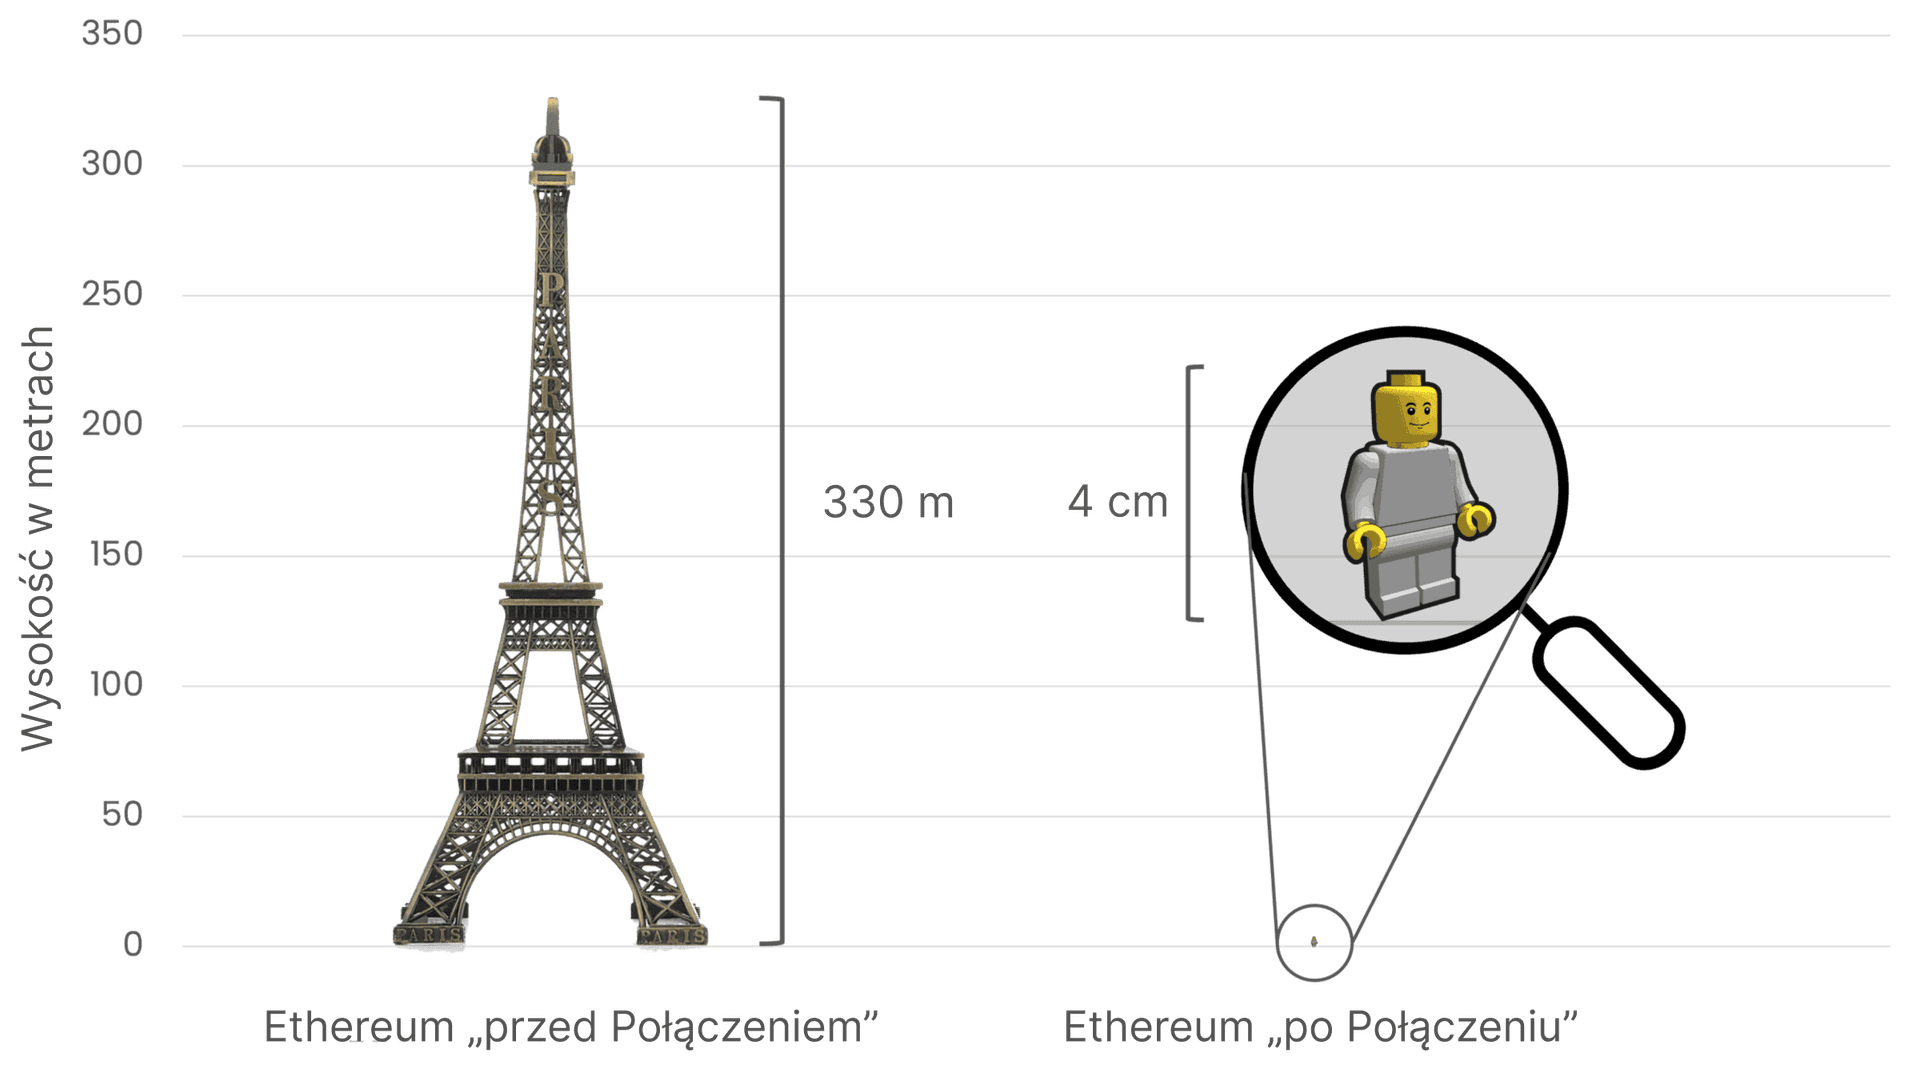 Porównanie zużycia energii przez Ethereum przed i po Połączeniu, przy użyciu wieży Eiffla (330 metrów wysokości) po lewej stronie, która symbolizuje wysokie zużycie energii przed Połączeniem, oraz małej figurki Lego o wysokości 4 cm po prawej stronie, która symbolizuje radykalnie zmniejszone zużycie energii po Połączeniu